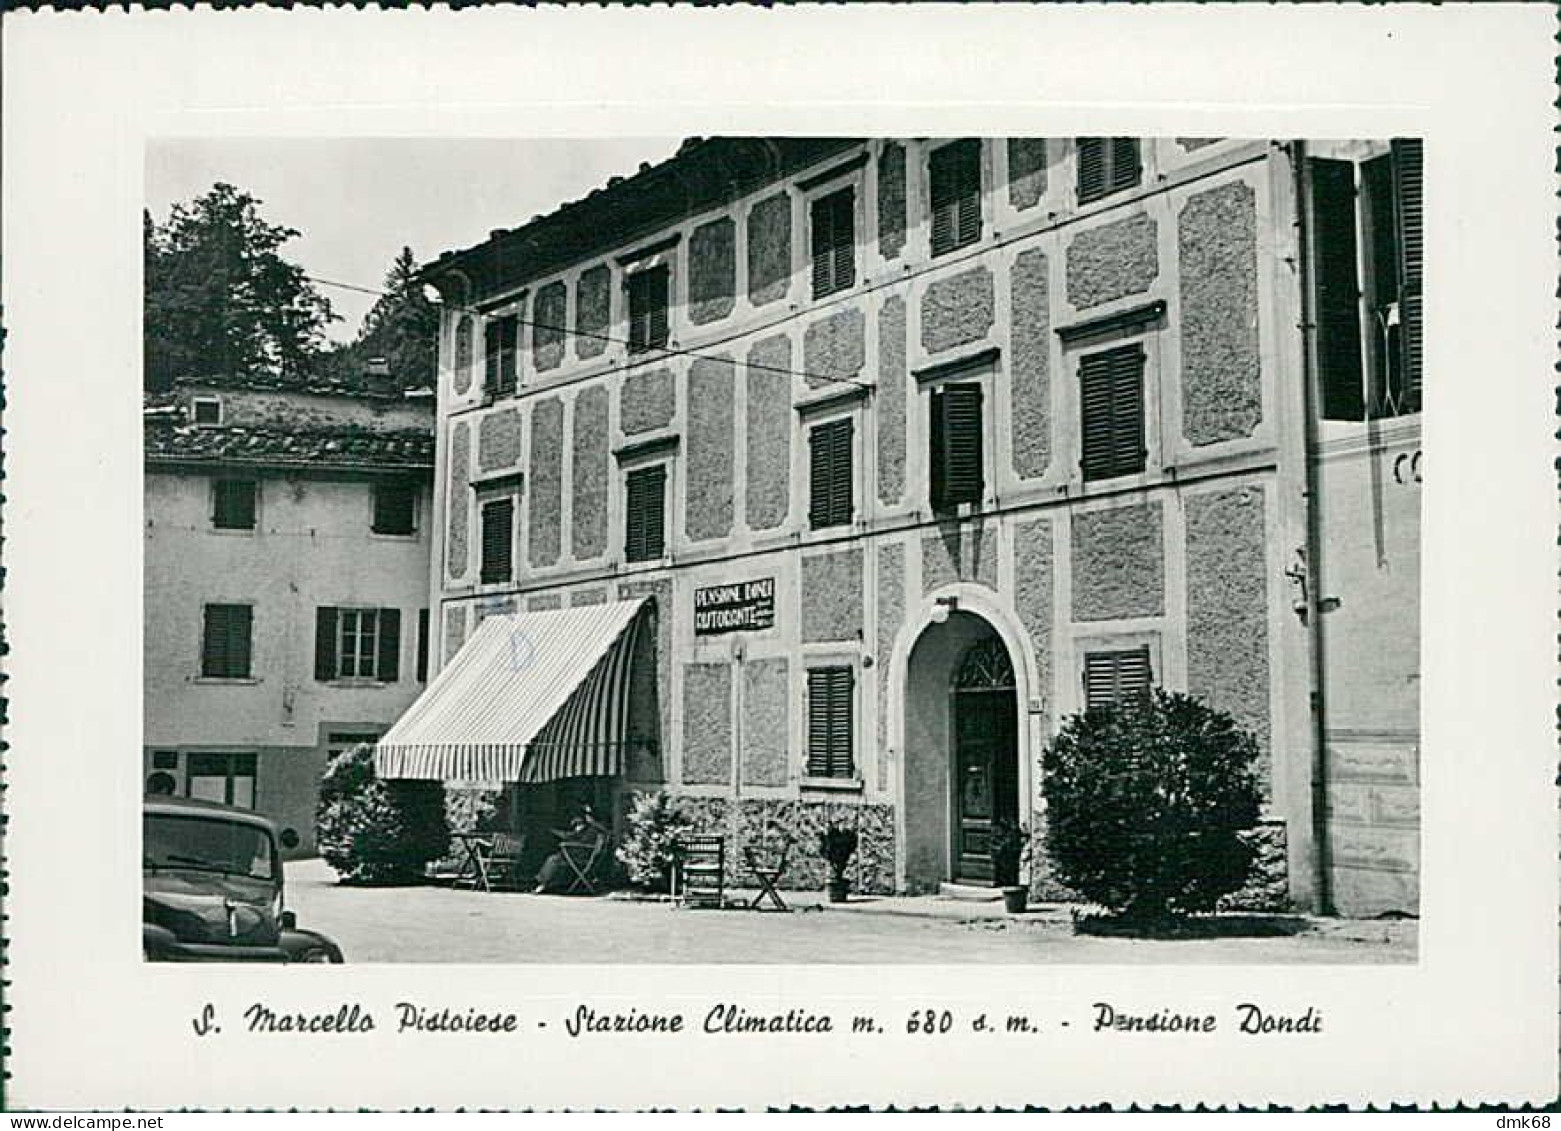 SAN MARCELLO PISTOIESE ( PISTOIA ) PENSIONE DONDI - EDIZIONE MUCCI - 1950s (20636) - Pistoia